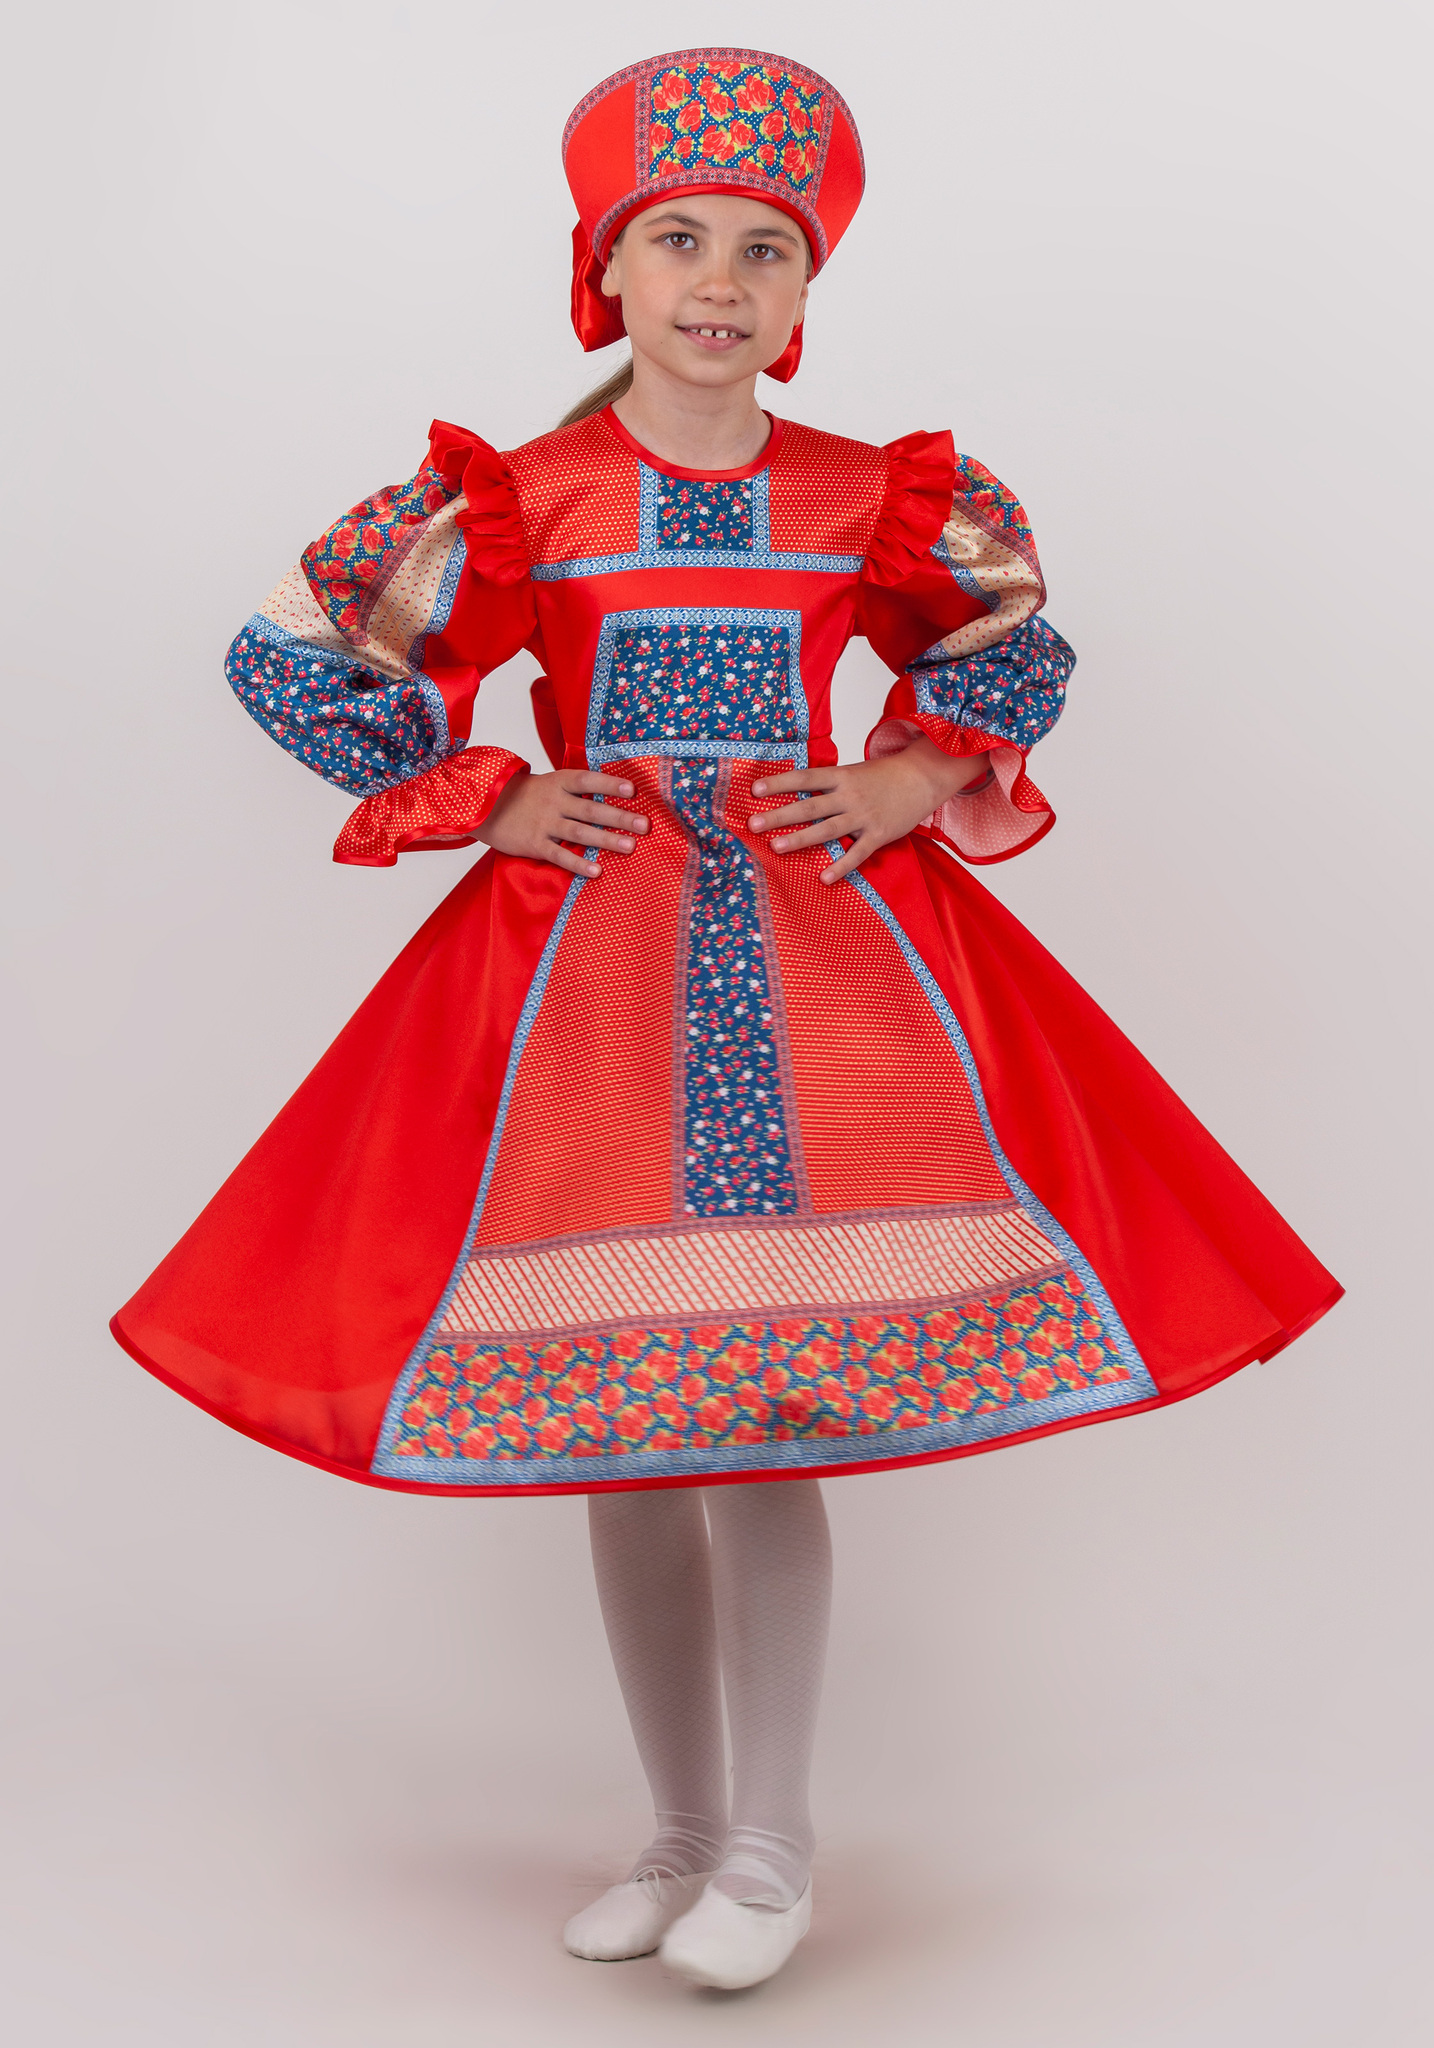 Цены на русские народные костюмы в интернет-магазине